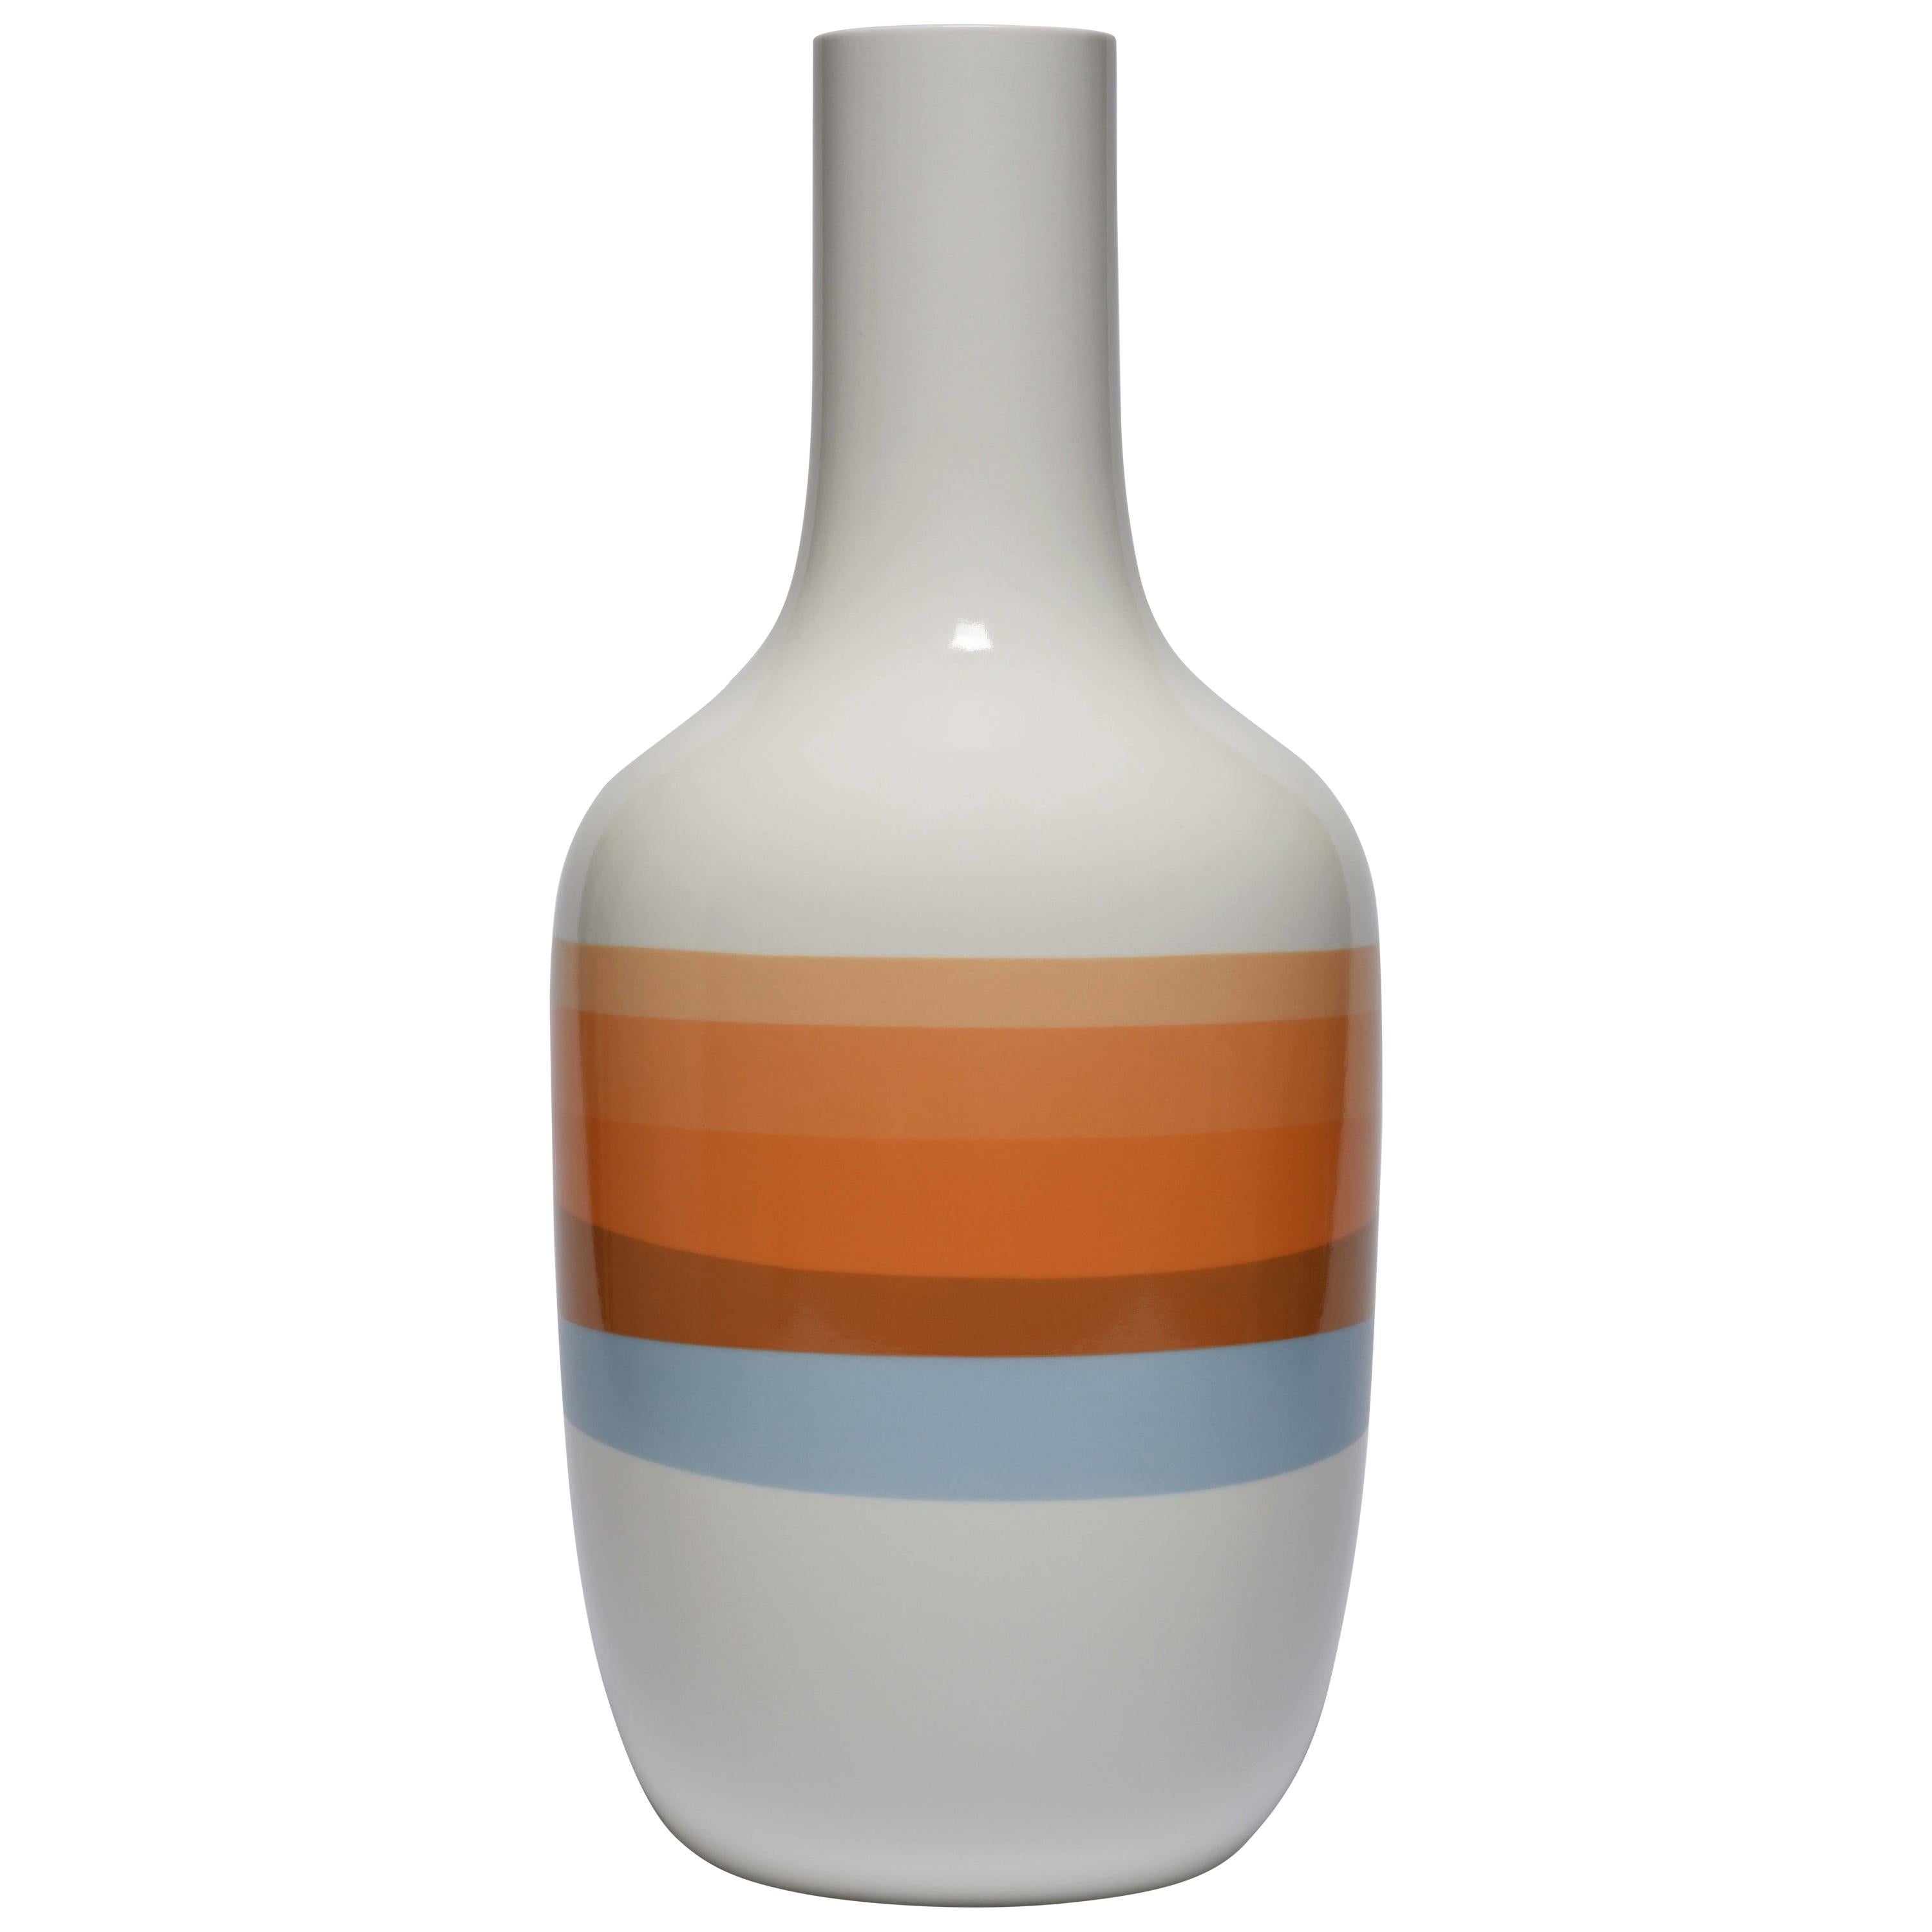 Scholten & Baijings 2.3 Vase in Porcelain by Manufacture Nationale de Sèvres For Sale